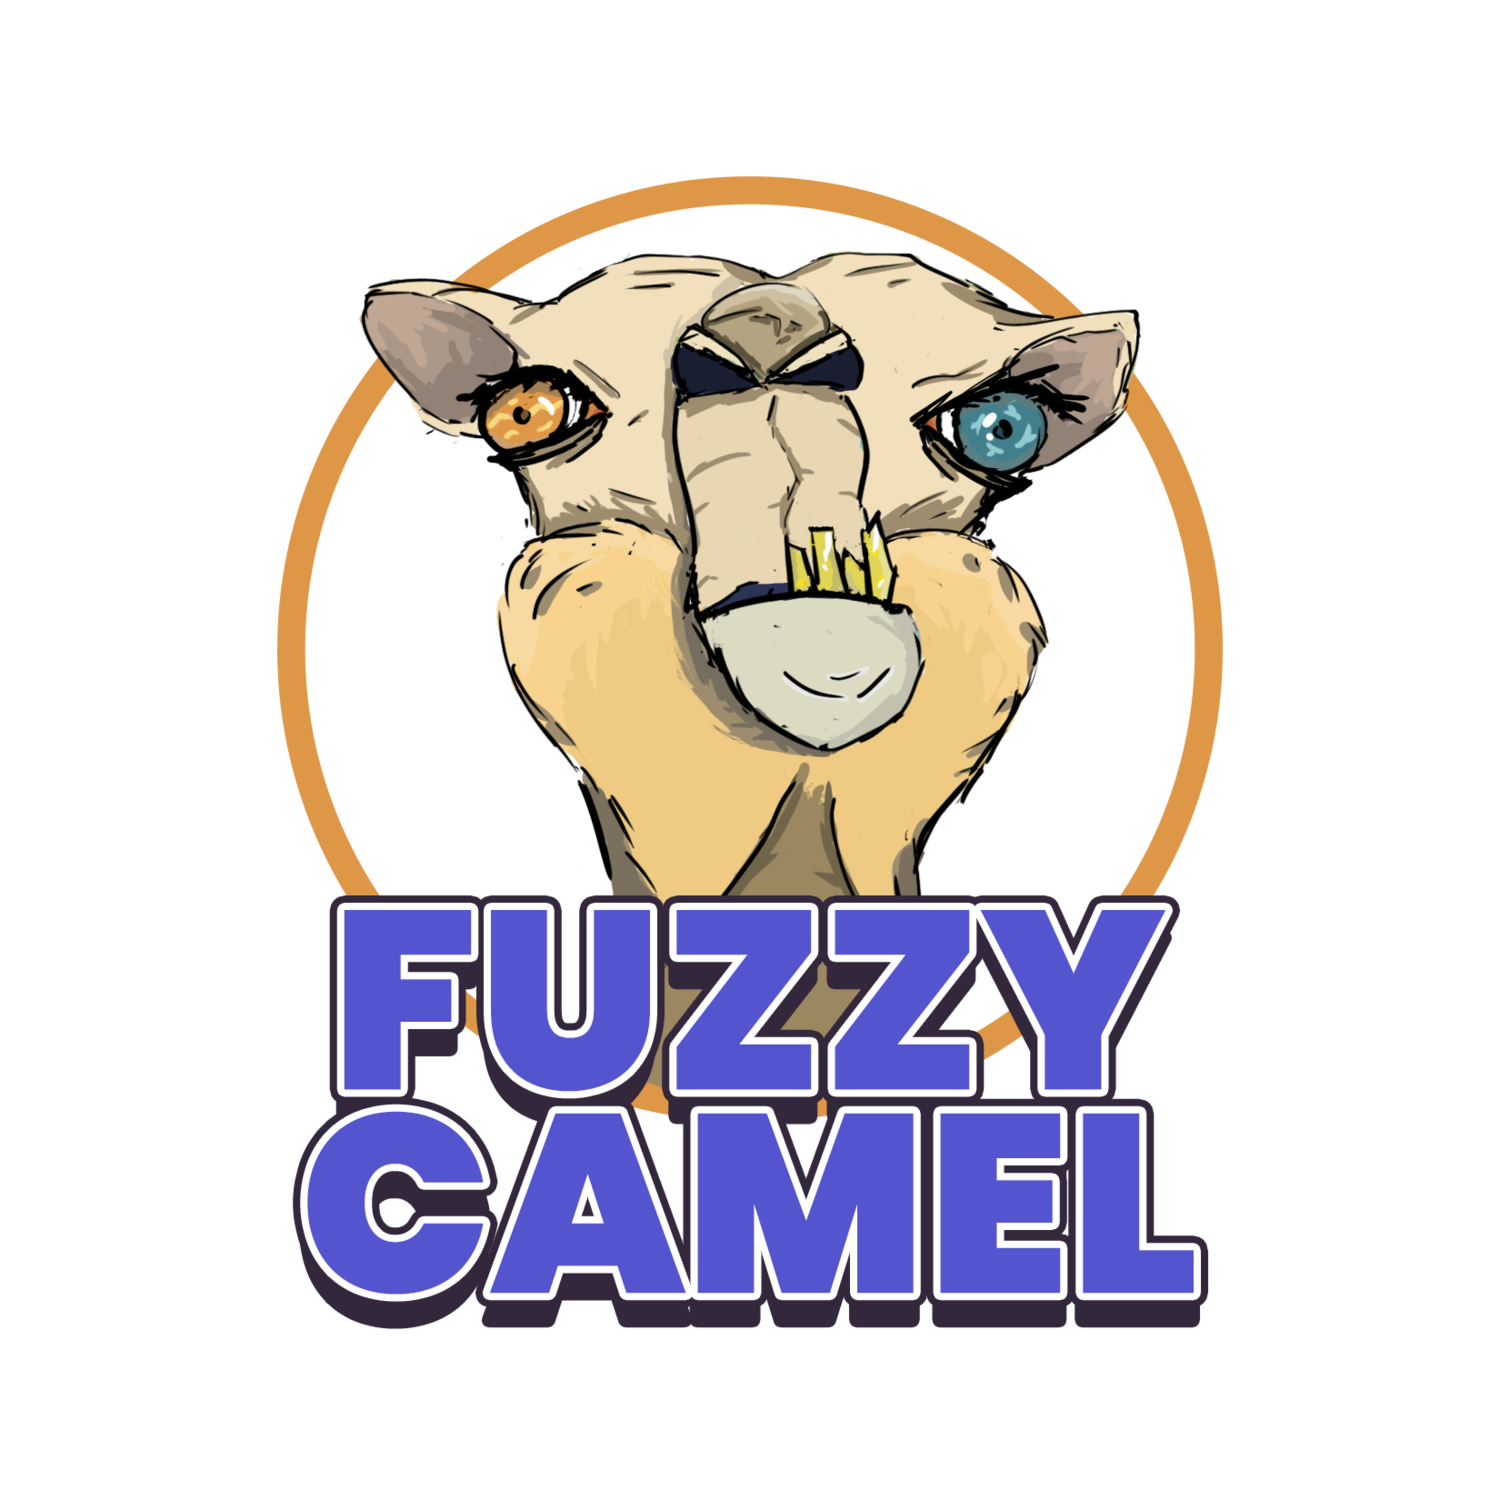 Fuzzy Camel Studios